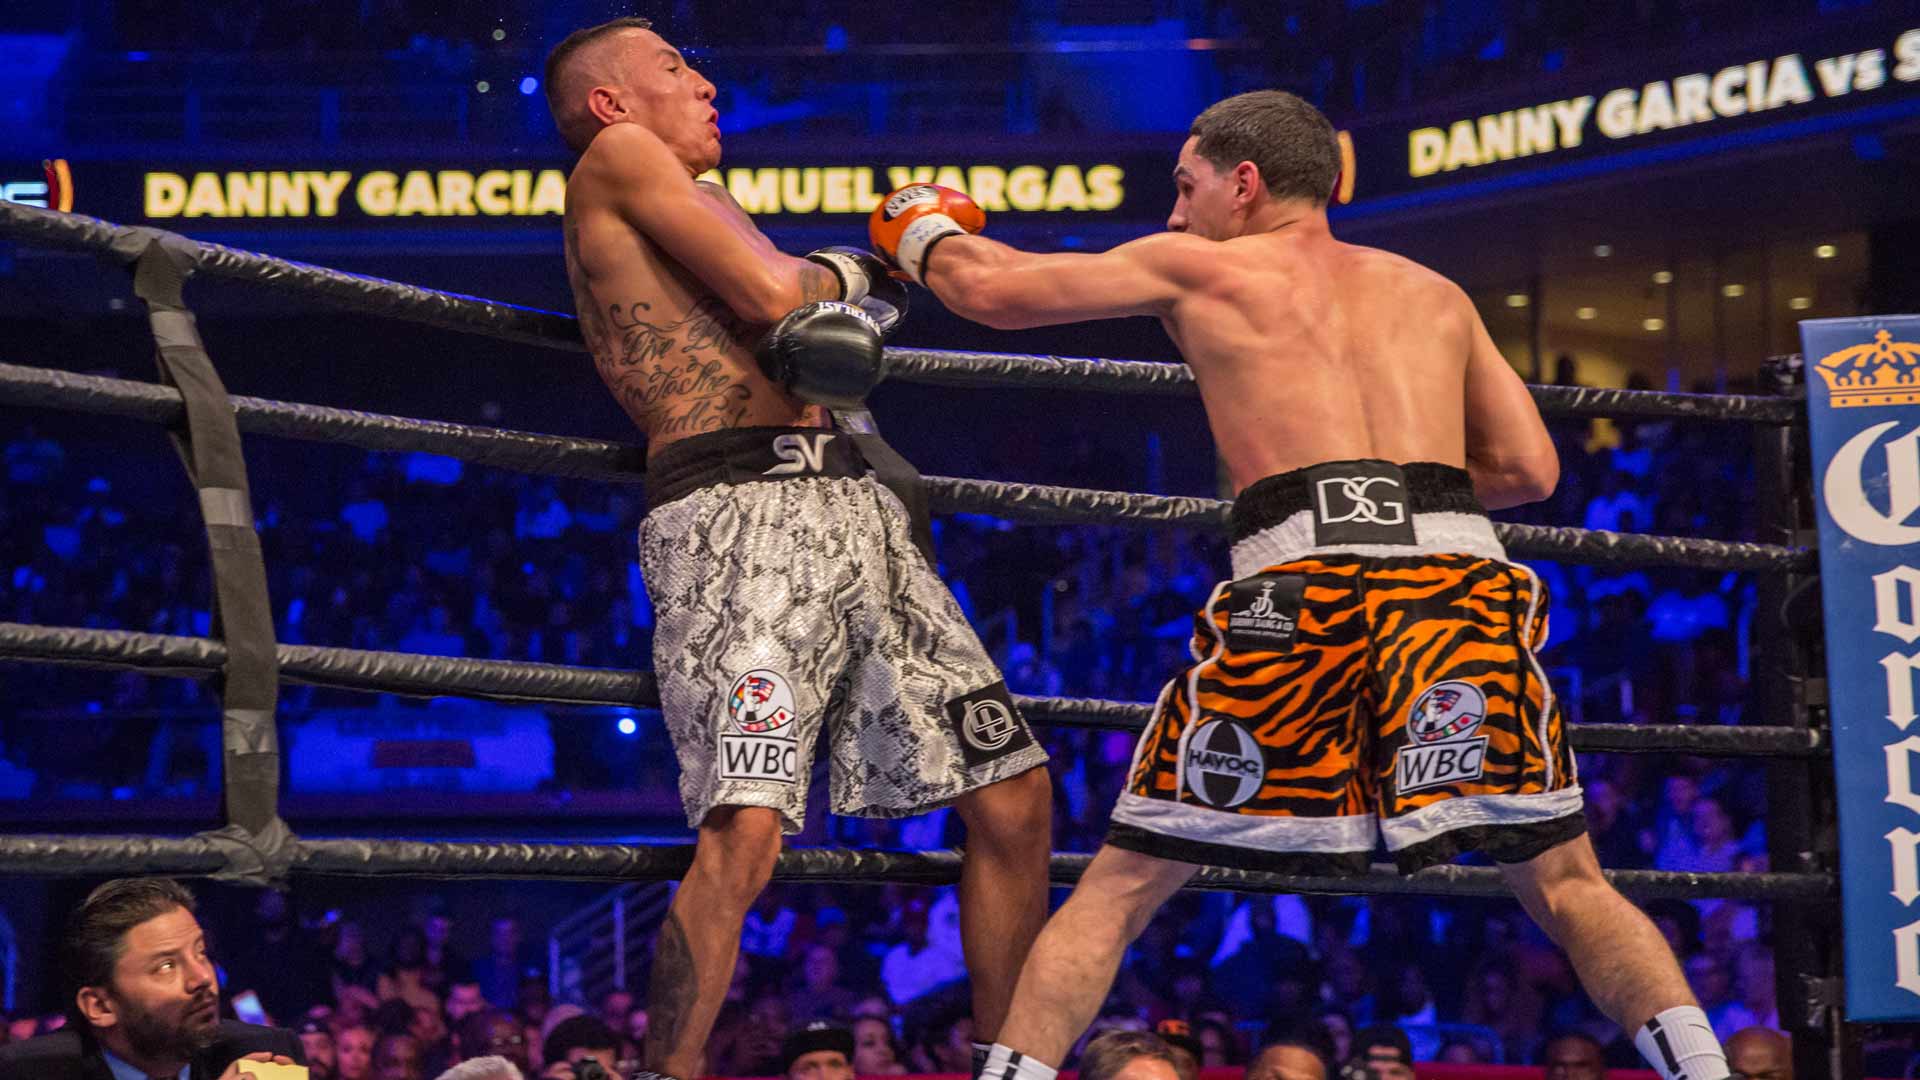 Garcia vs Vargas full fight: November 12, 2016